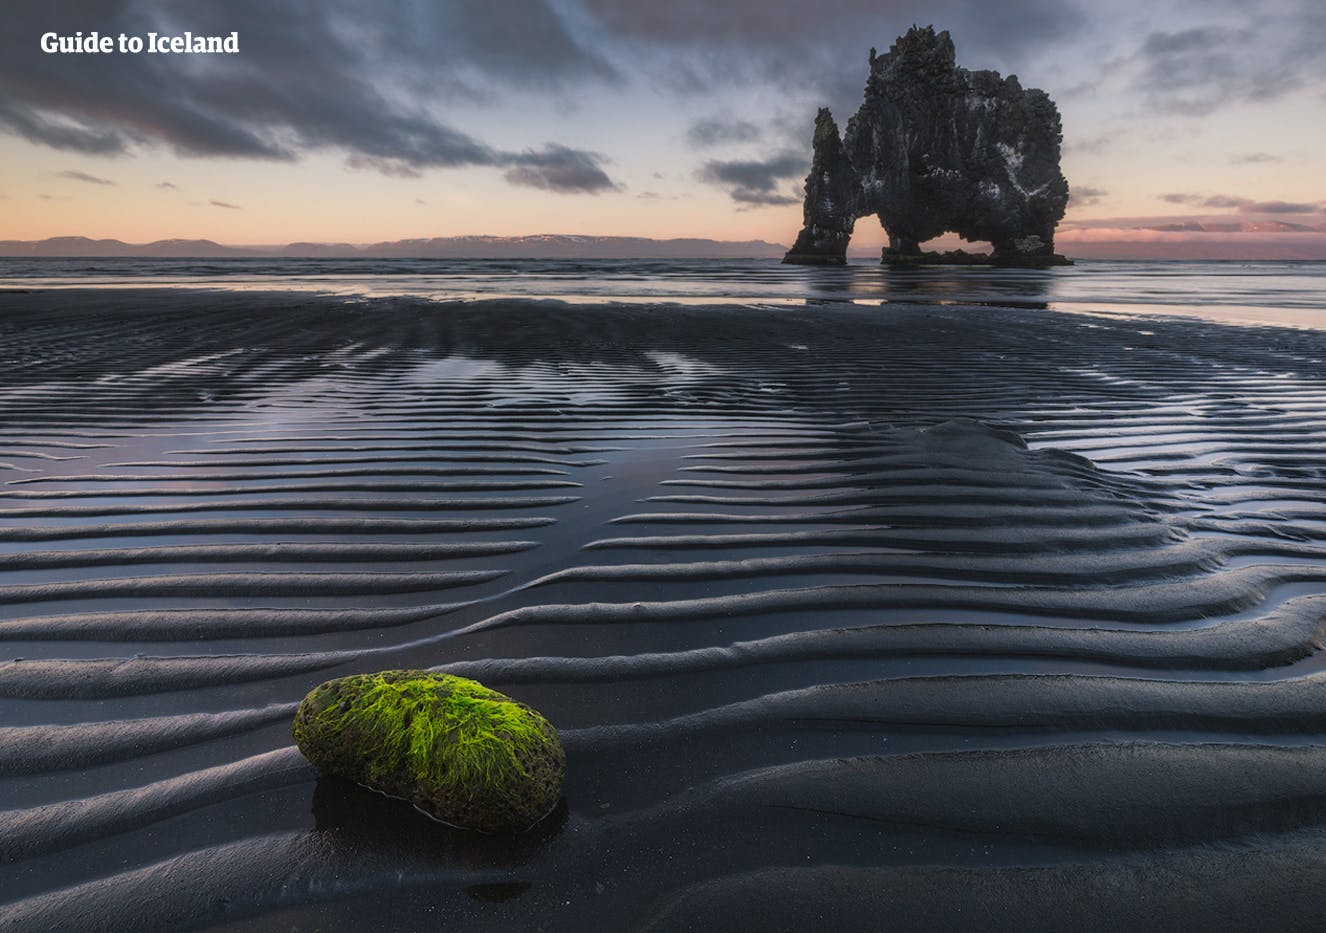 Le nord de l'Islande regorge de lieux d'intérêt naturels et culturels.